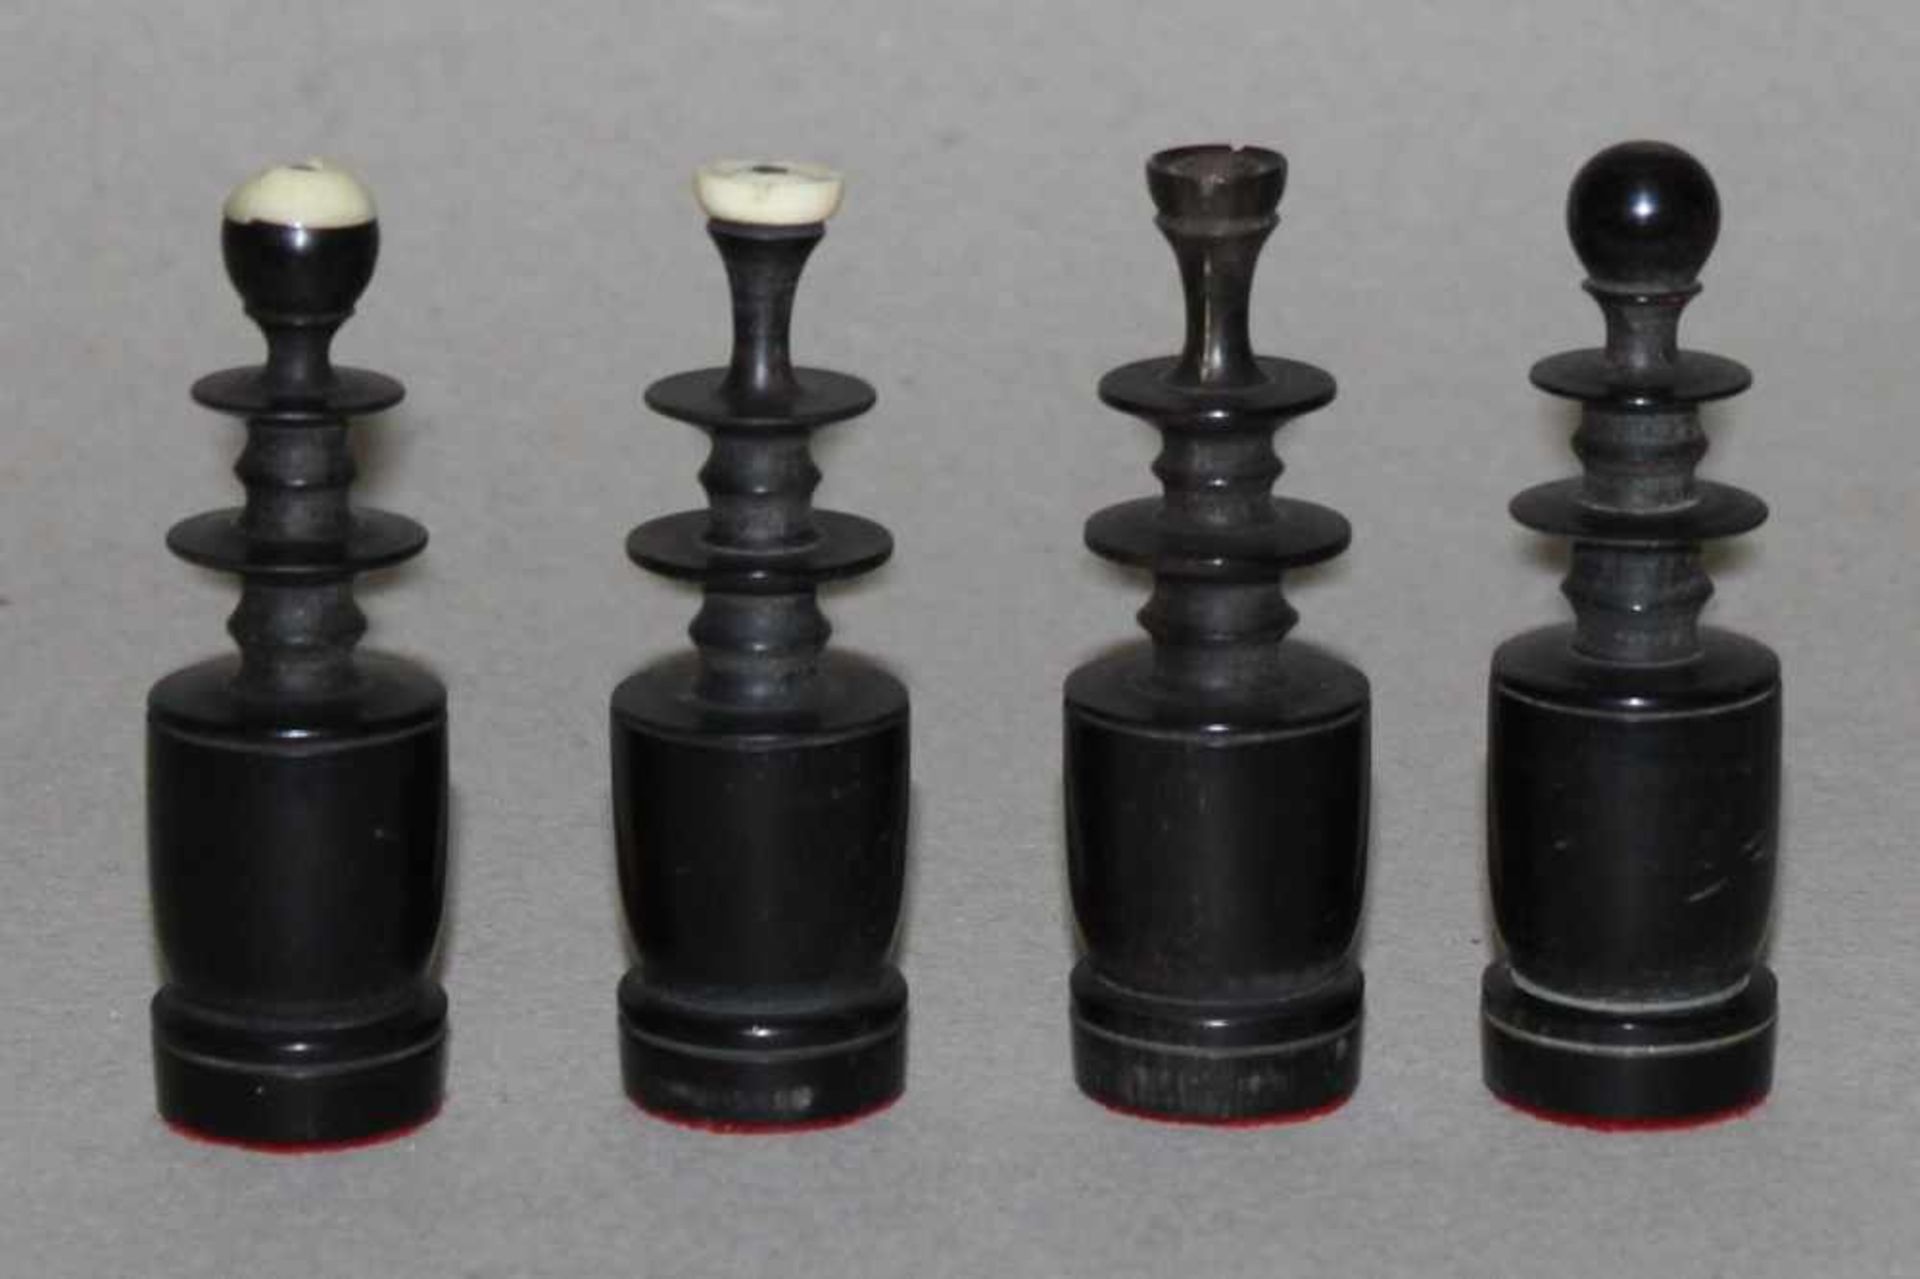 Asien. Vietnam. Schachfiguren aus Hornmit Spielkasten aus Holz. Spielfiguren in schwarz, eine Partei